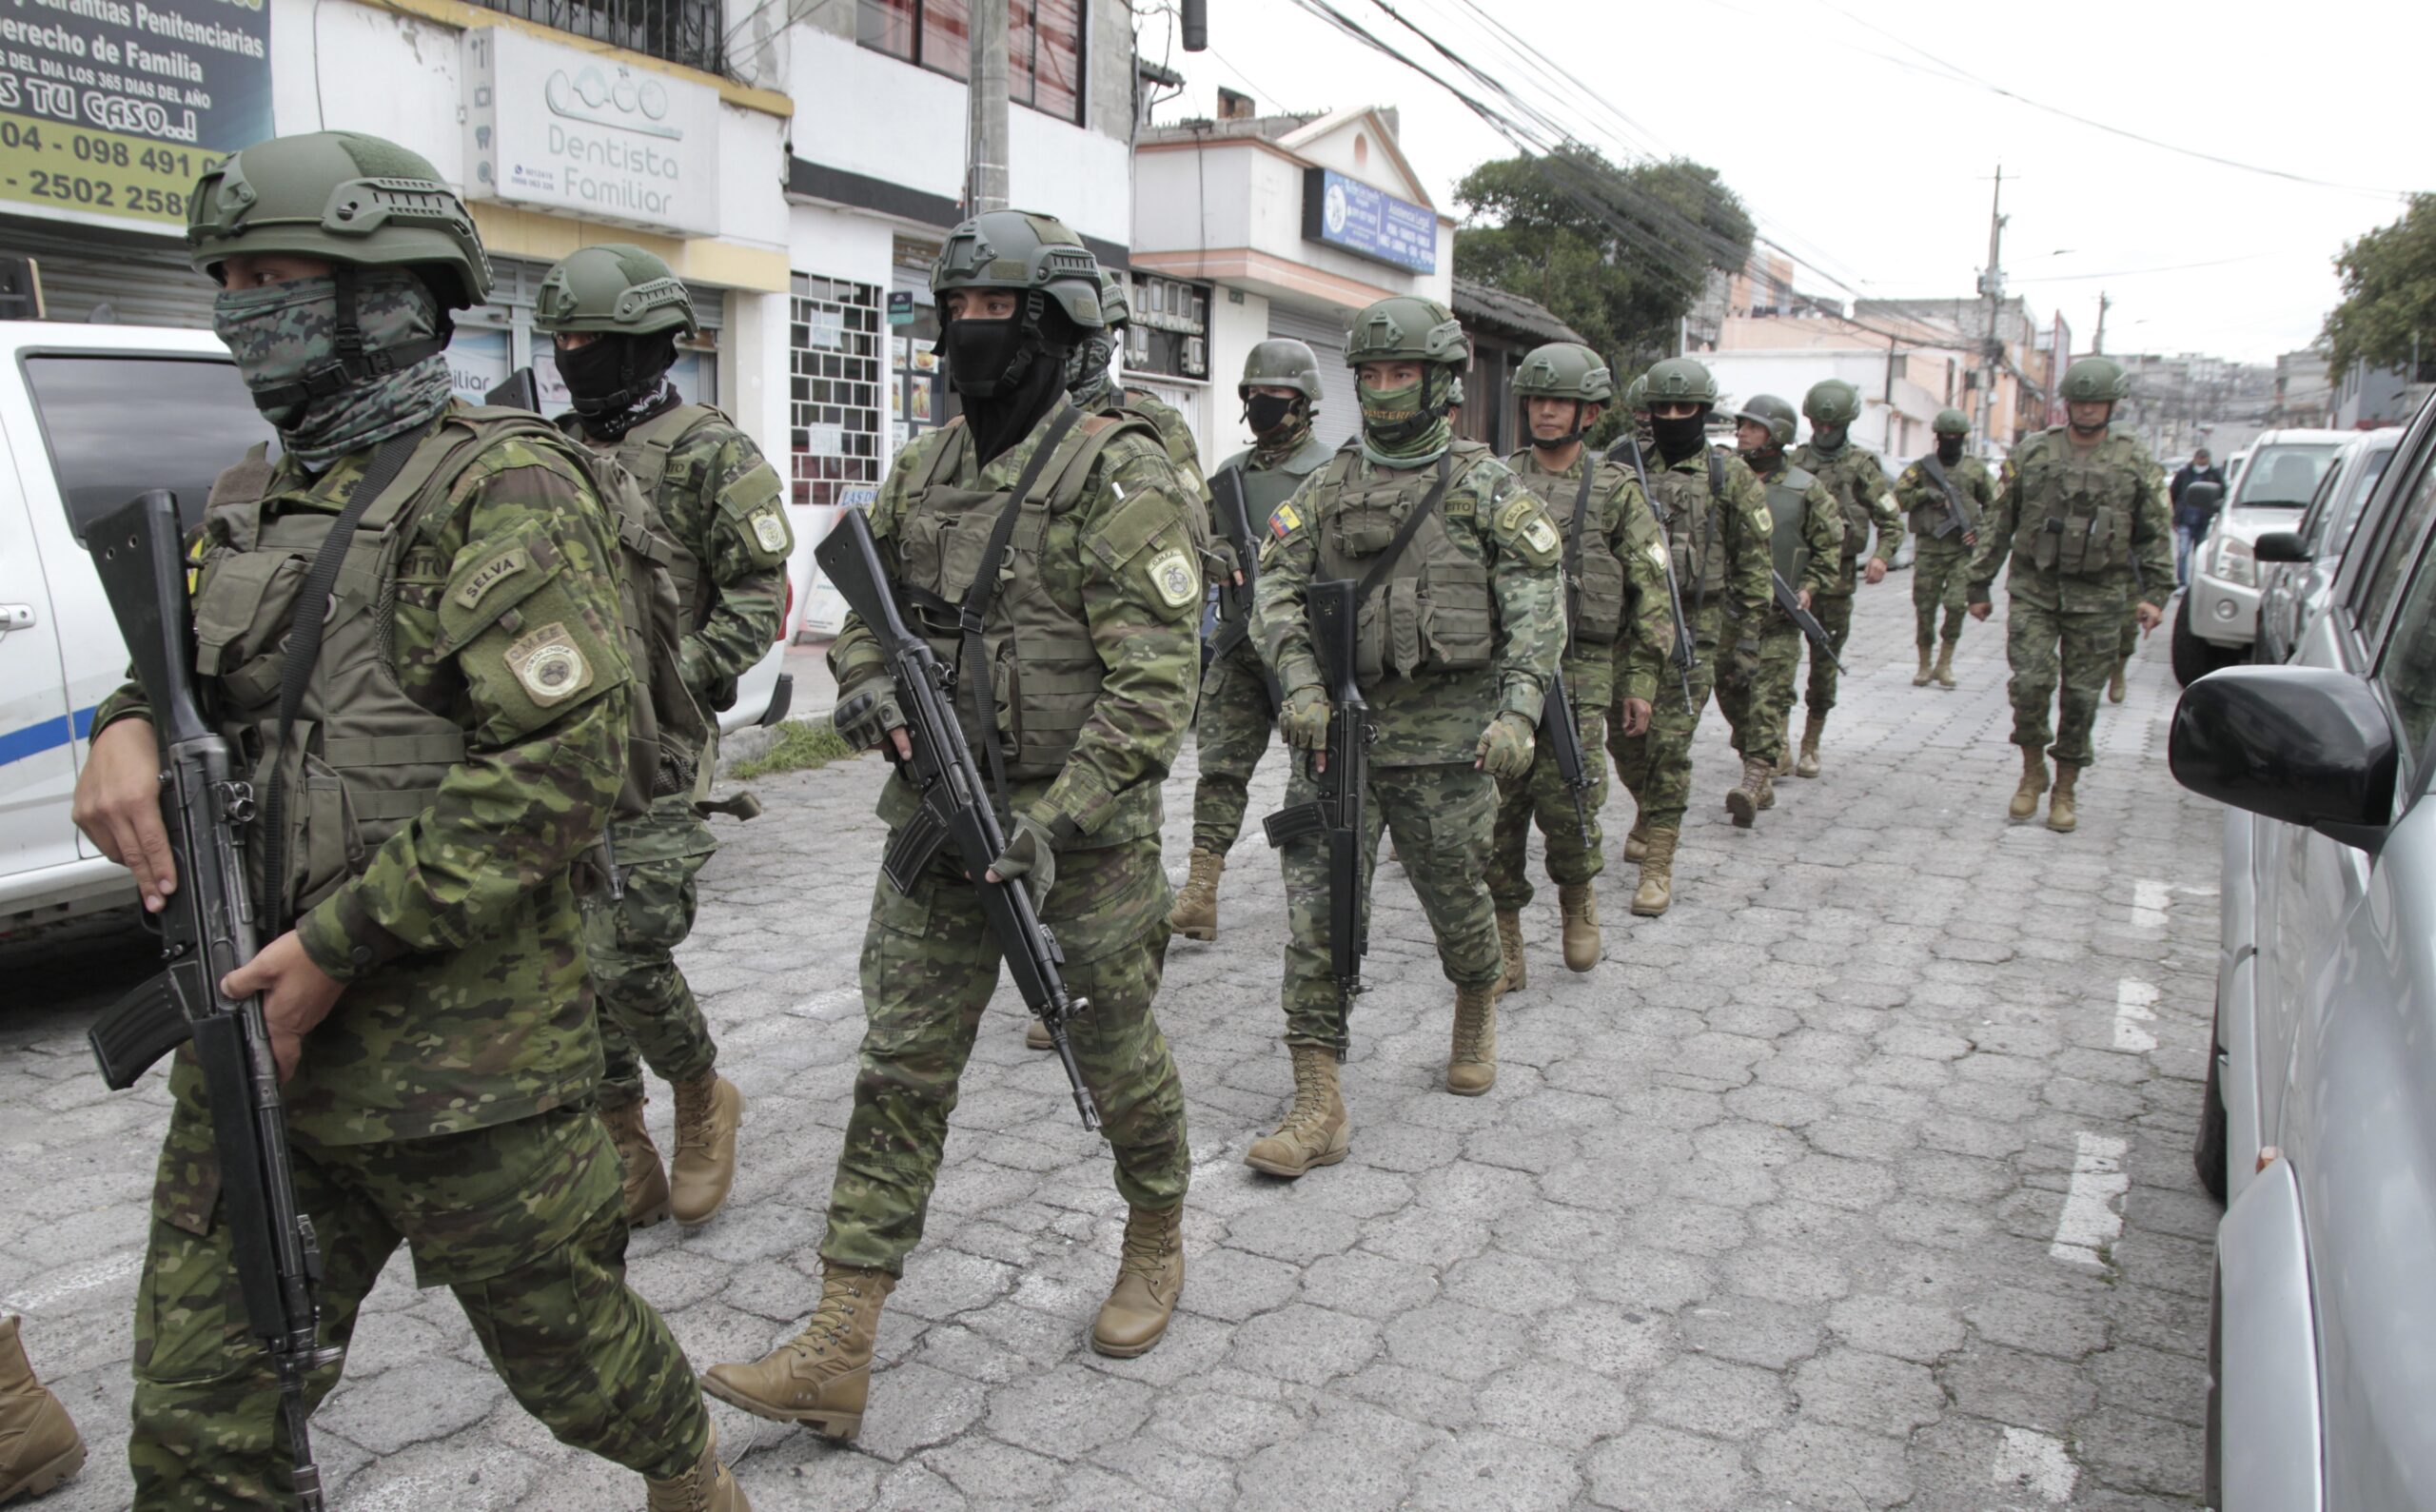 Crisis de violencia en Ecuador: el progresismo ante el problema de la seguridad